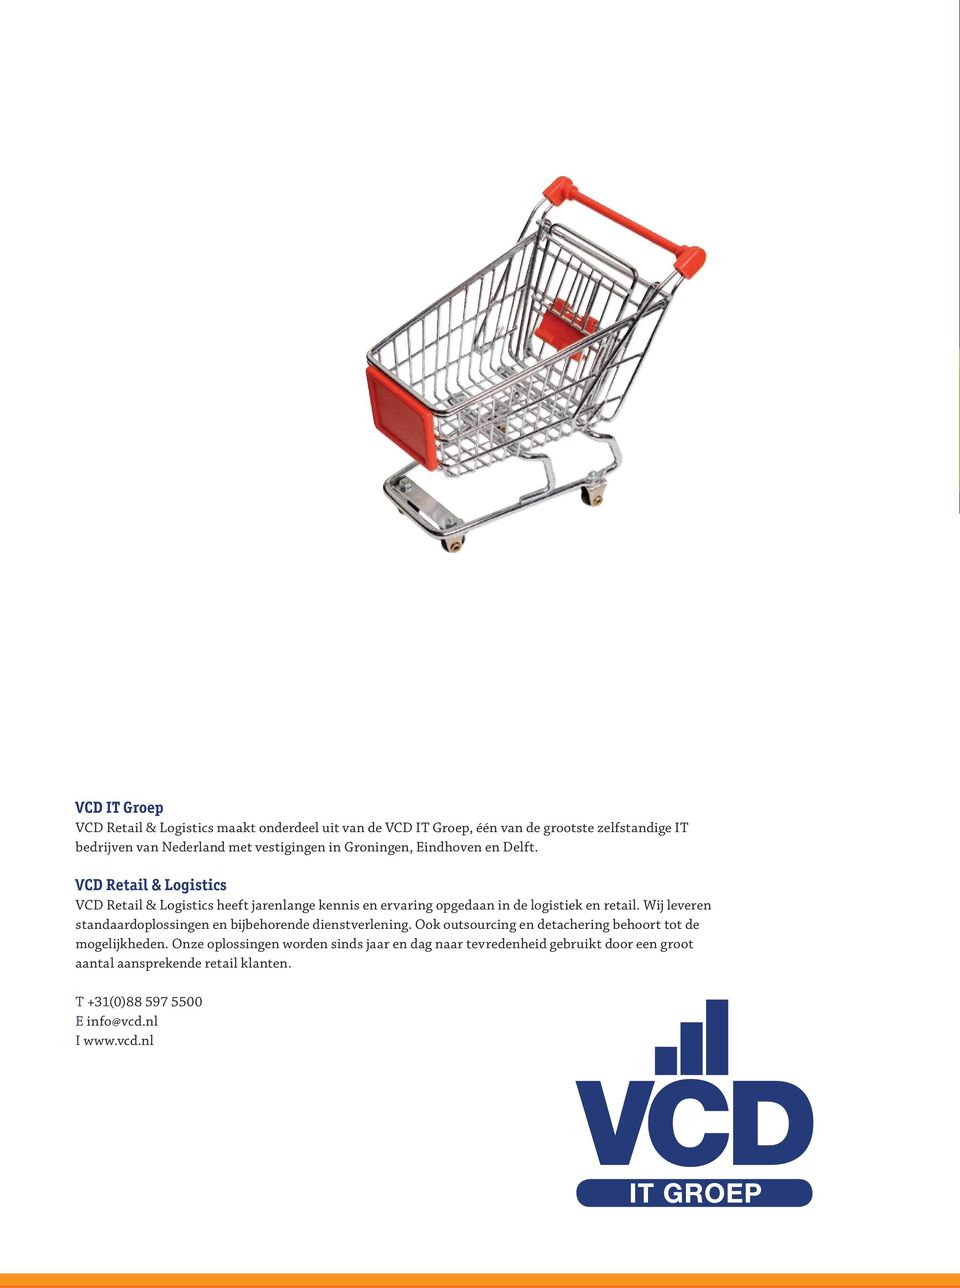 VCD Retail & Logistics VCD Retail & Logistics heeft jarenlange kennis en ervaring opgedaan in de logistiek en retail.